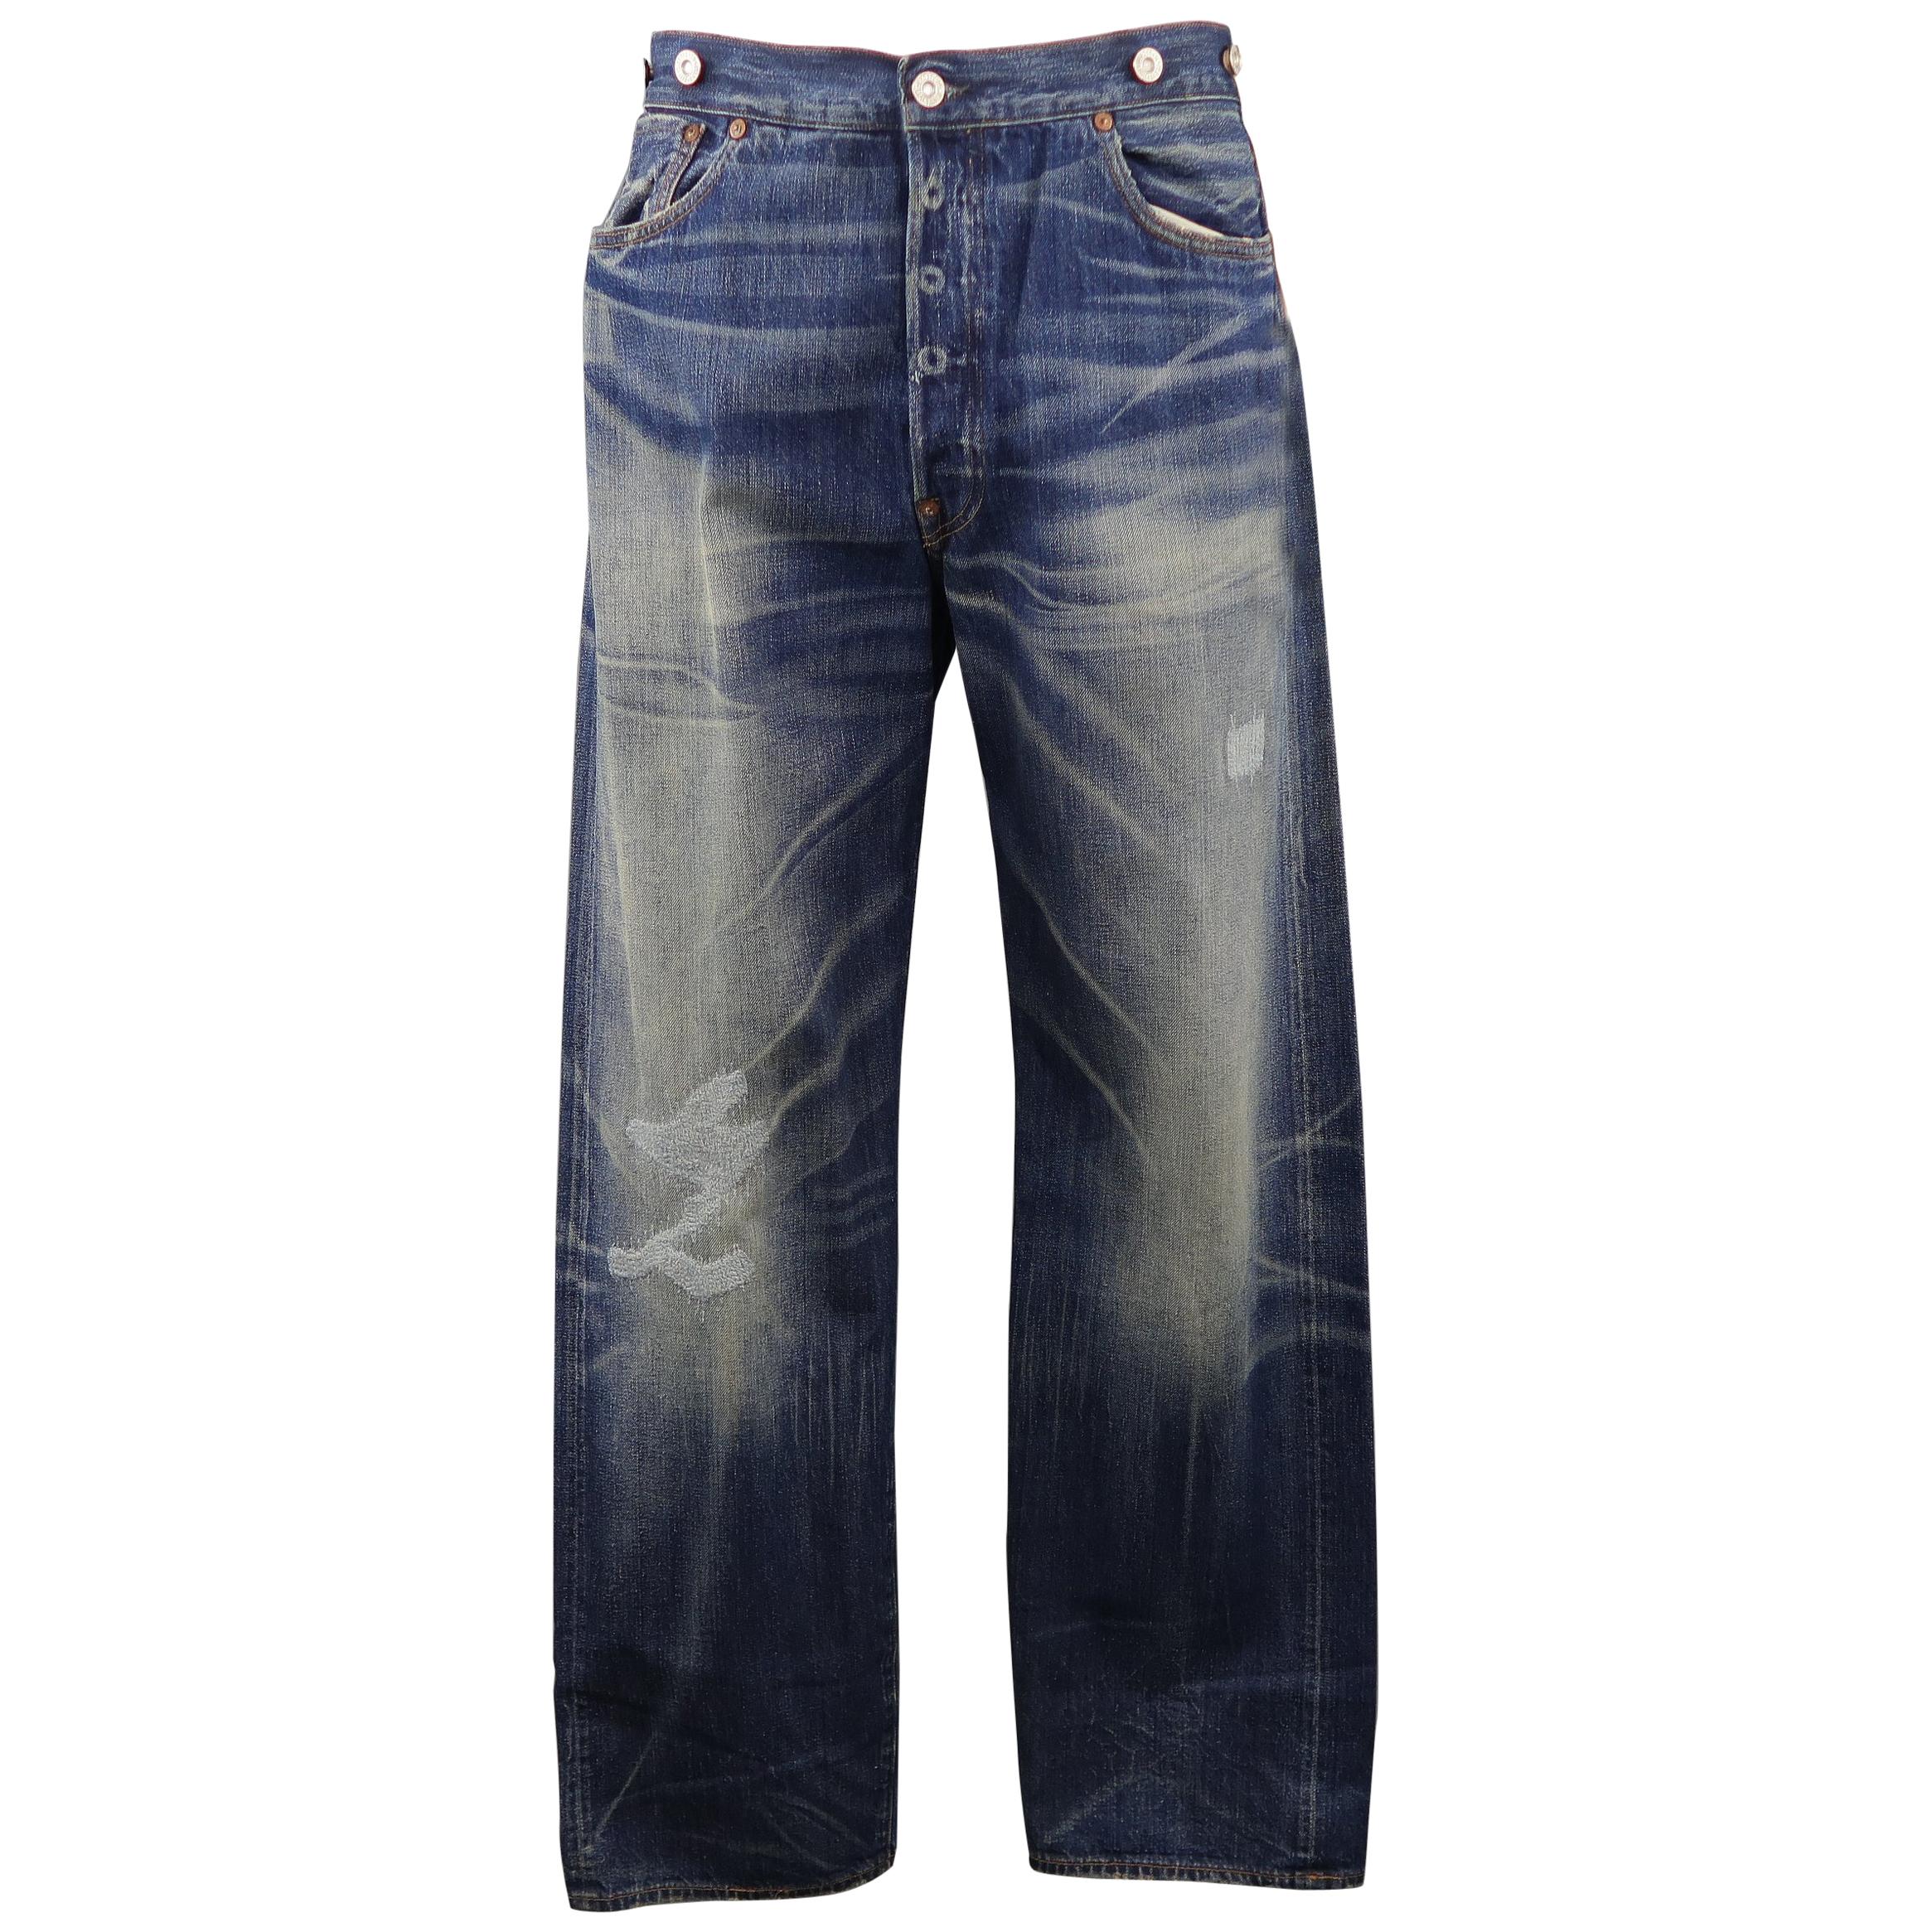 LEVI'S VINTAGE Size 35 Indigo Washed Distressed Selvedge Denim Jeans